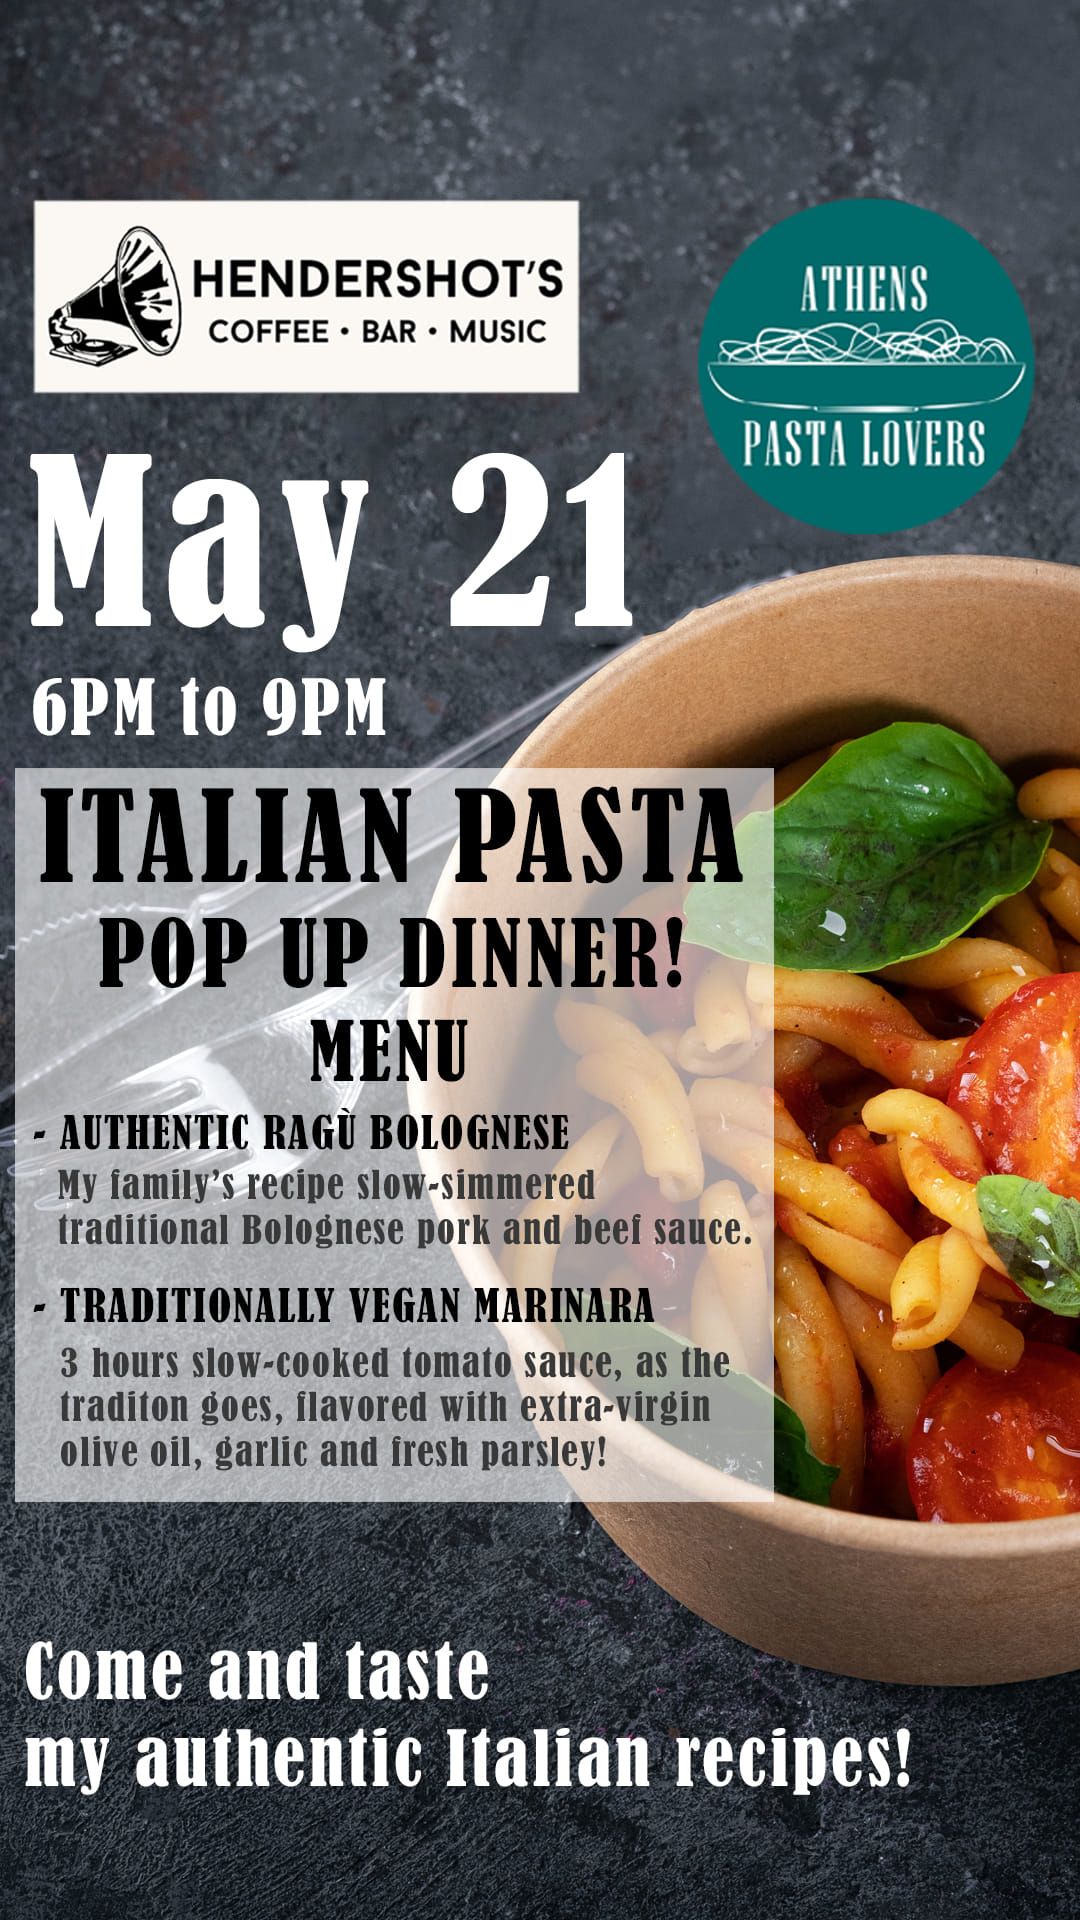 Authentic Italian Pasta Pop-Up Dinner!